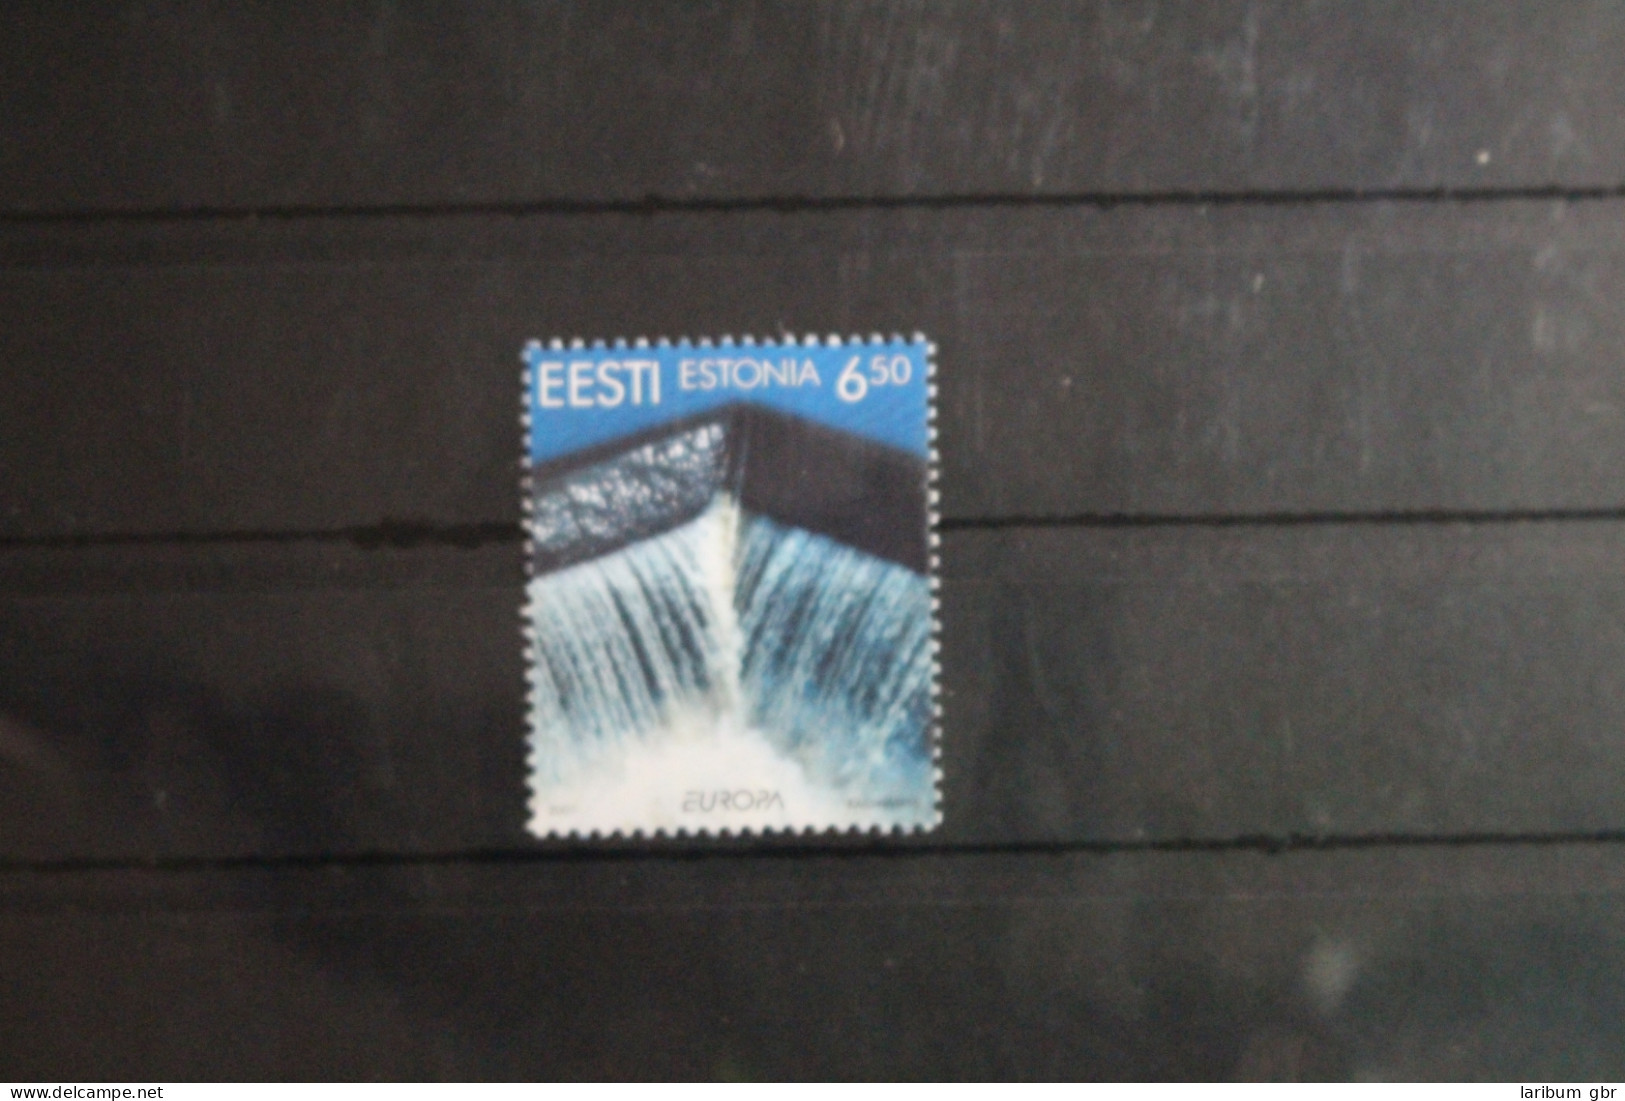 Estland 399 Postfrisch Europa Lebensspender Wasser #VQ889 - Estonia